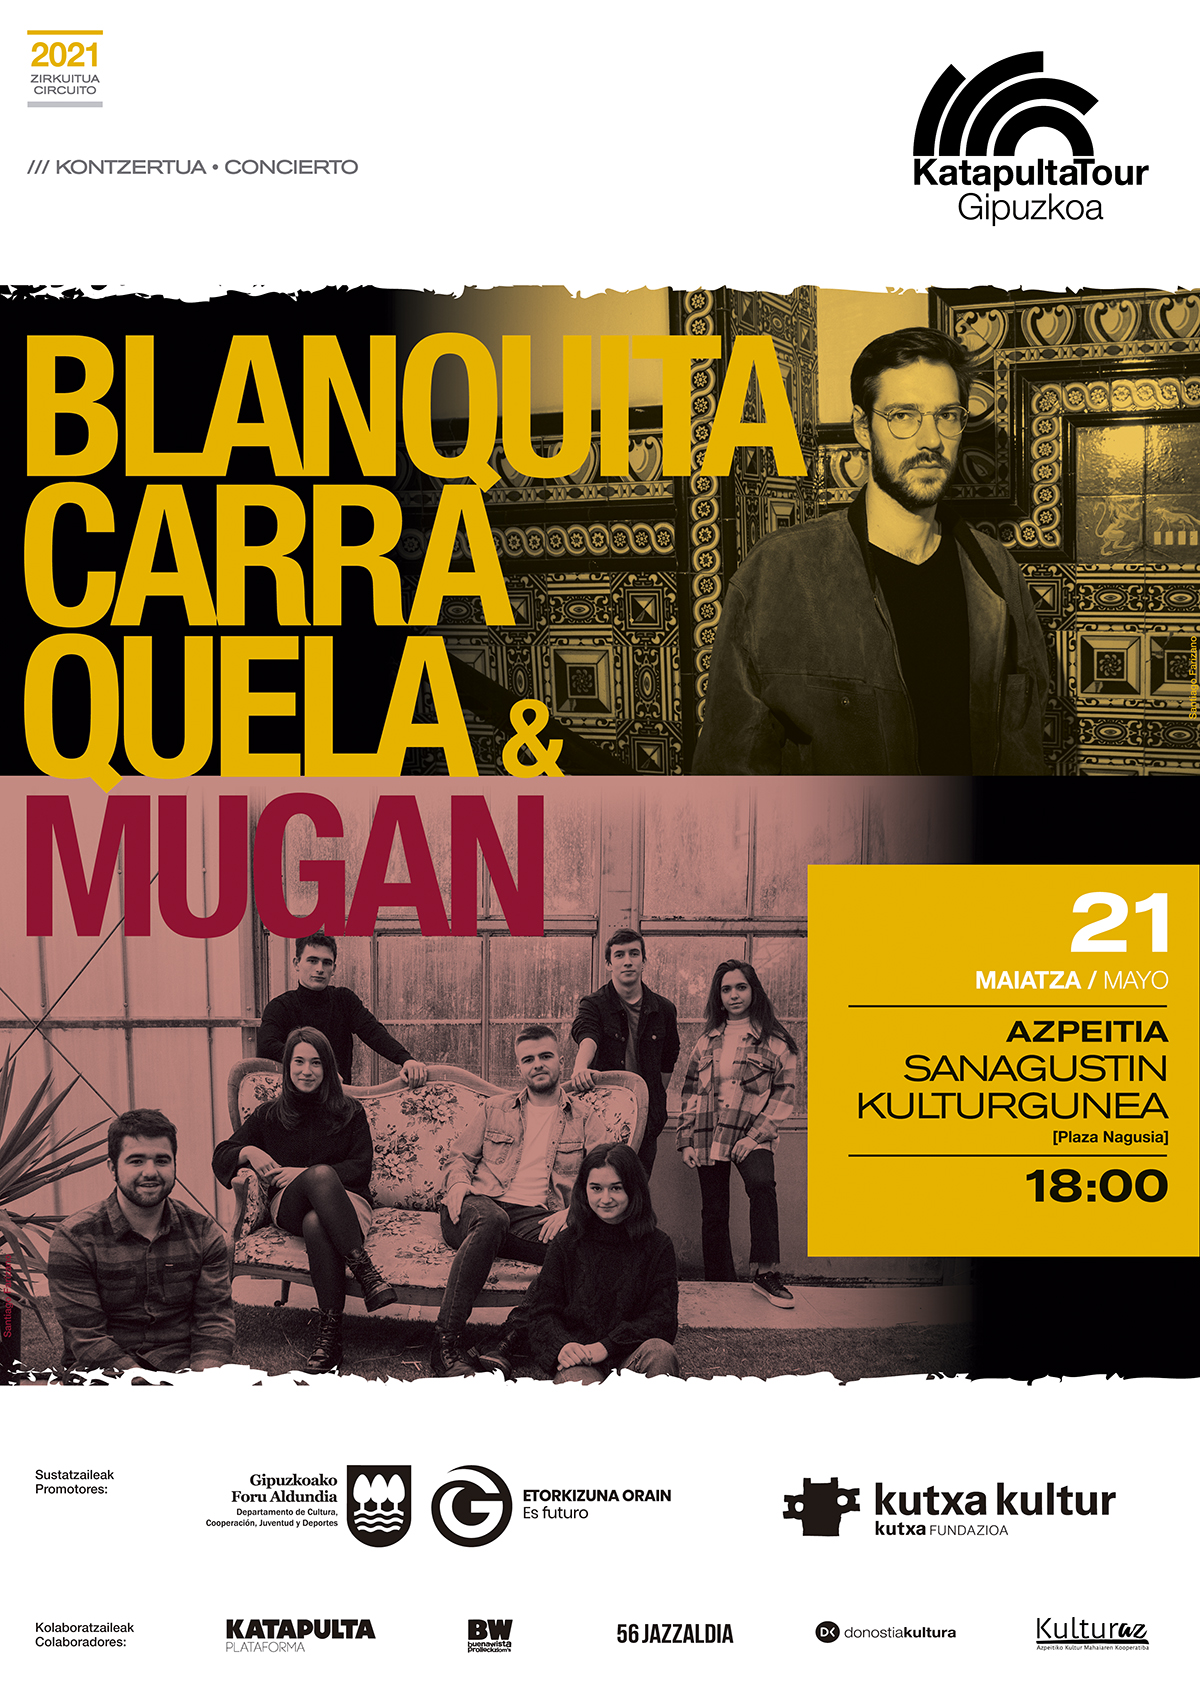 BLANQUITA CARRAQUELA + MUGAN